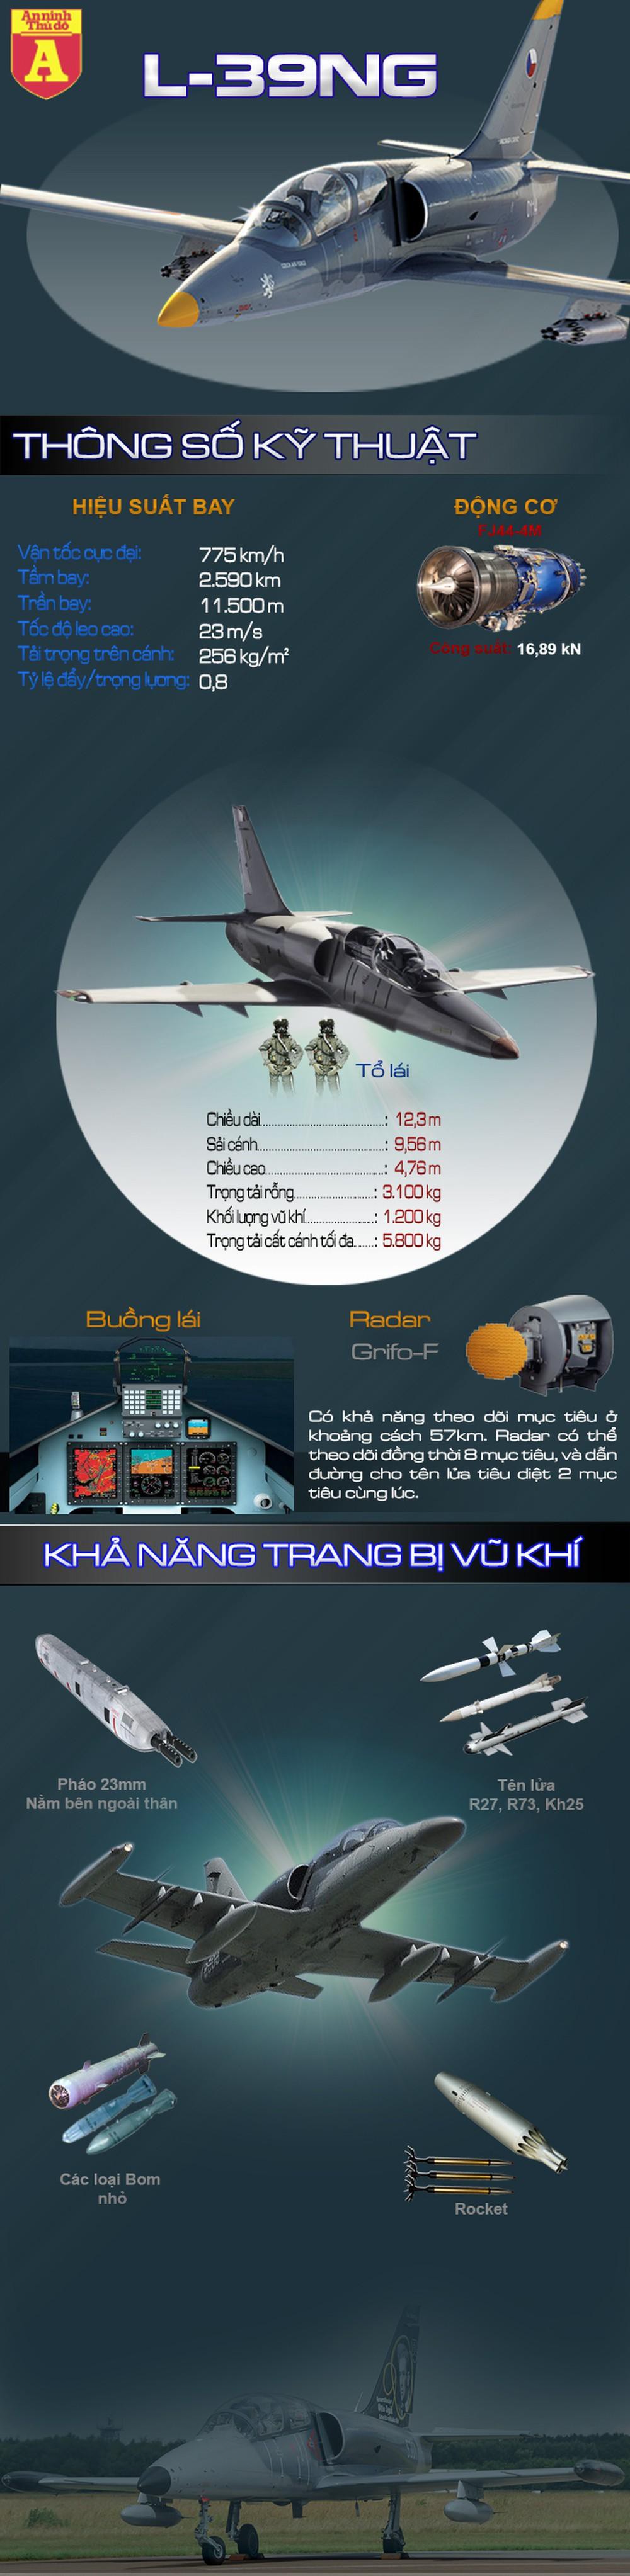 [Infographics] L-39NG - Cường kích mặt đất hiện đại ẩn mình trong huấn luyện cơ  - Ảnh 1